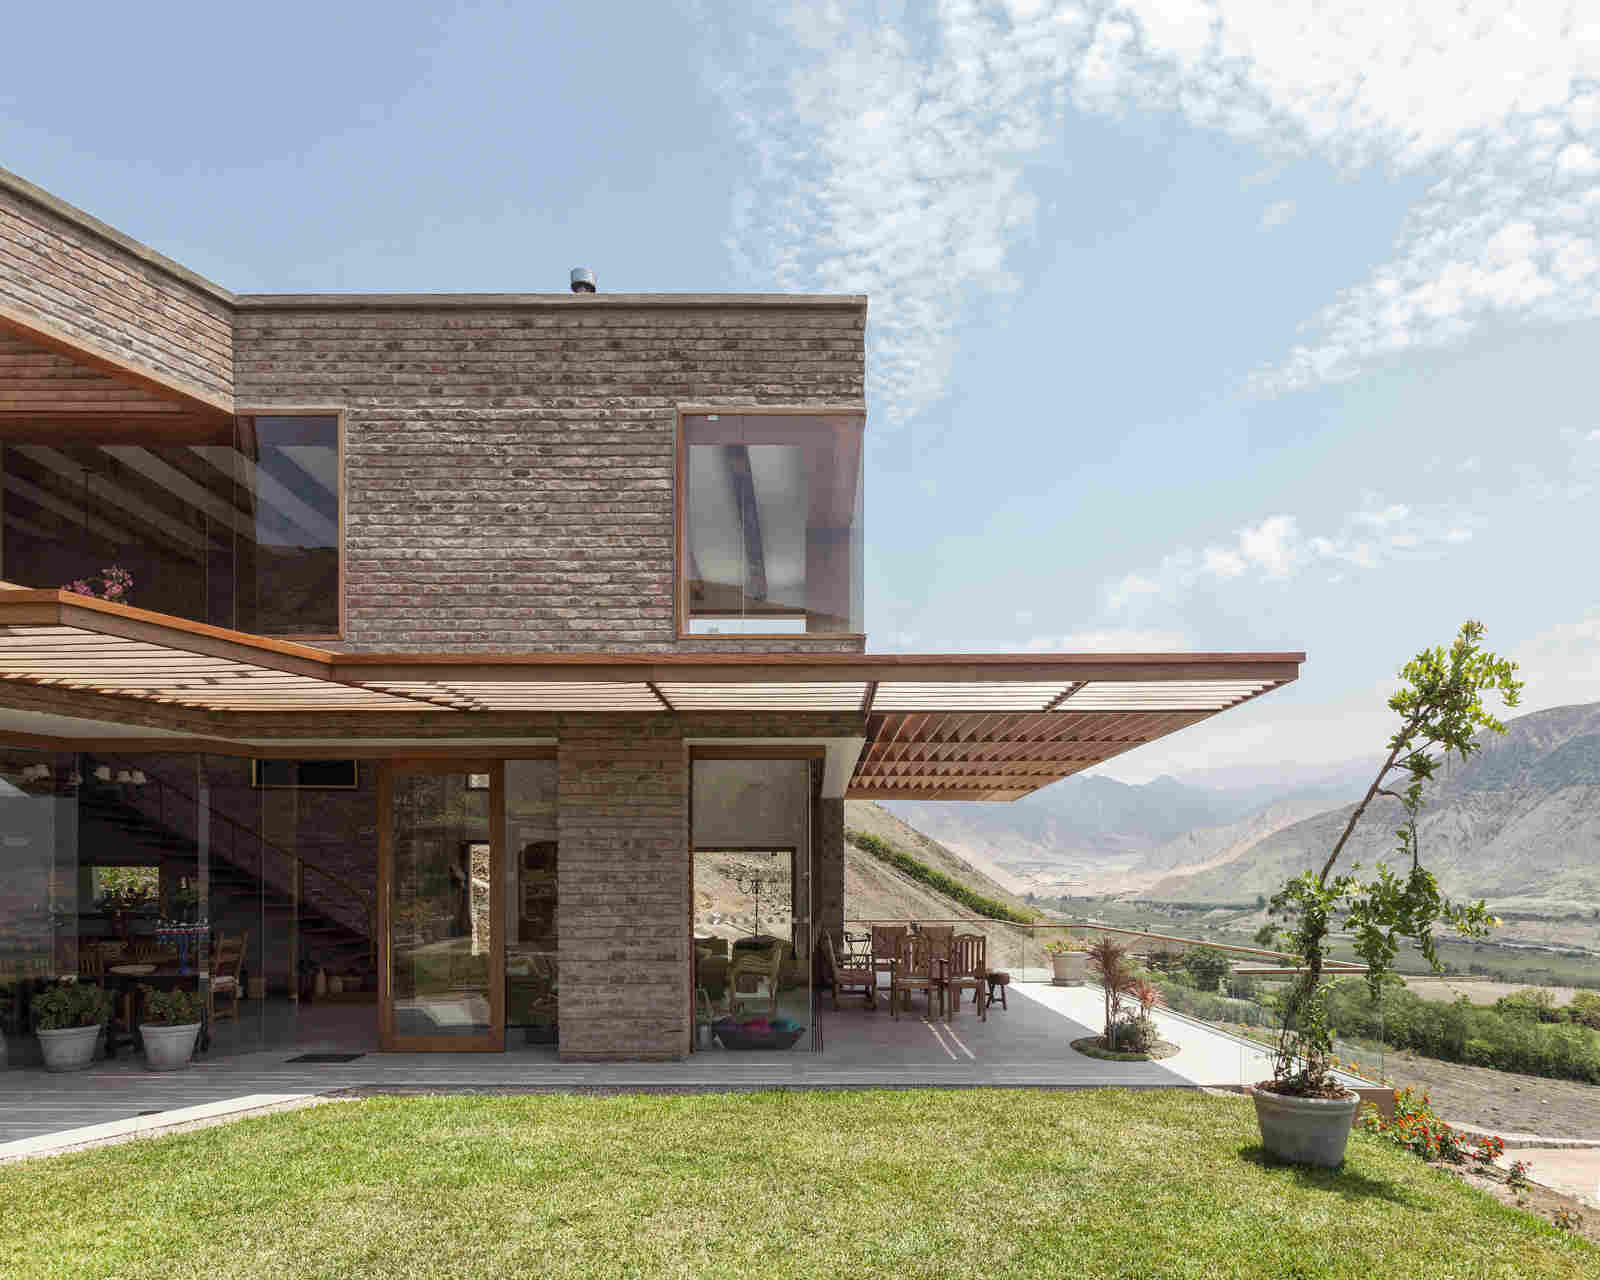 House in Peru